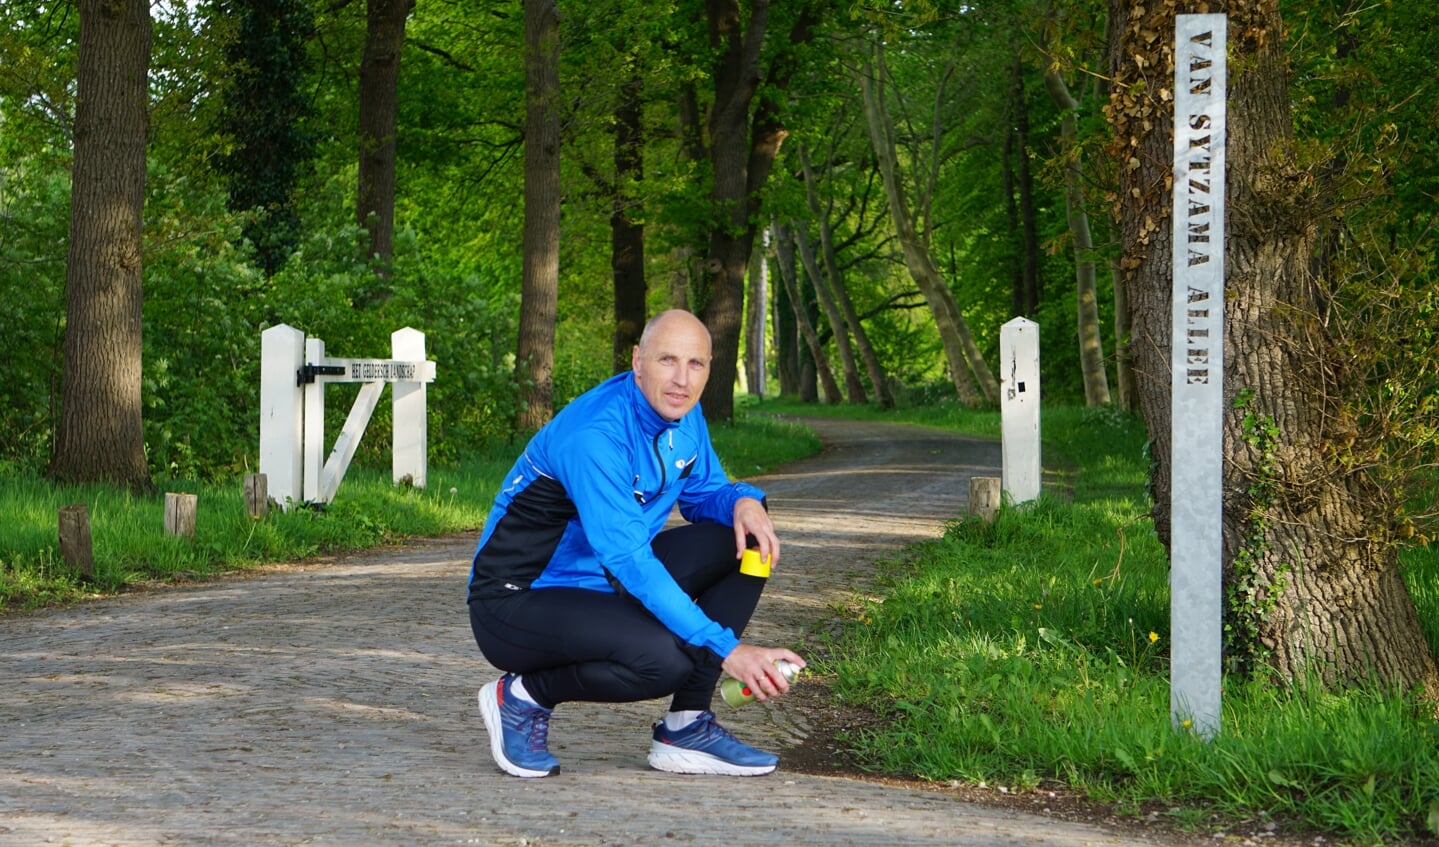   Hans van Renselaar moedigt graag iedereen aan om te gaan hardlopen. 